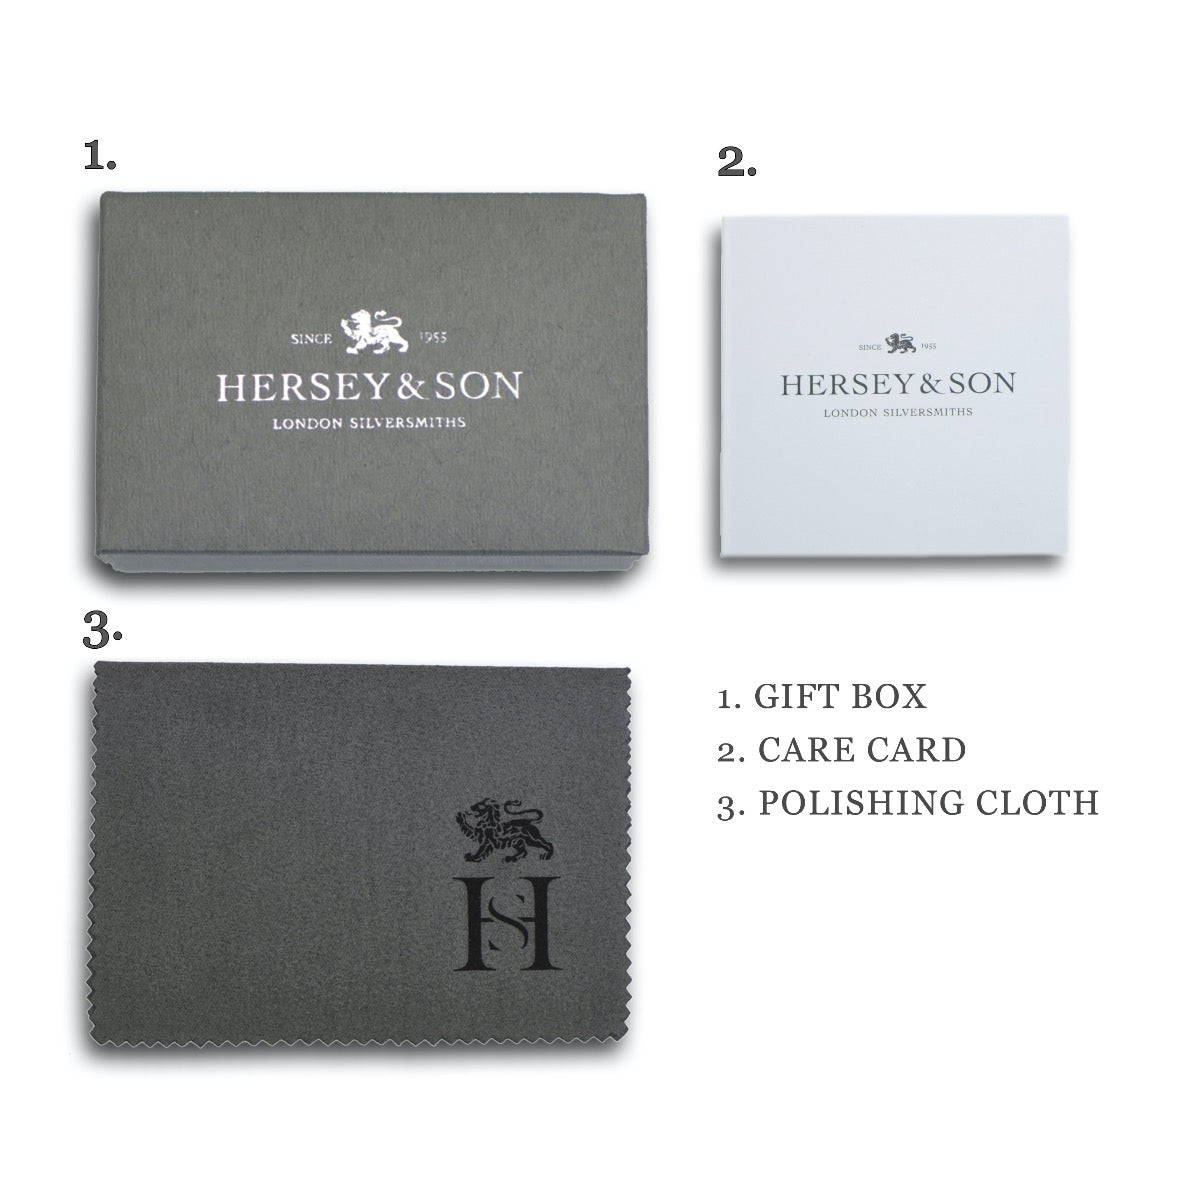 Hersey & Son Silversmiths packaging silver cufflinks